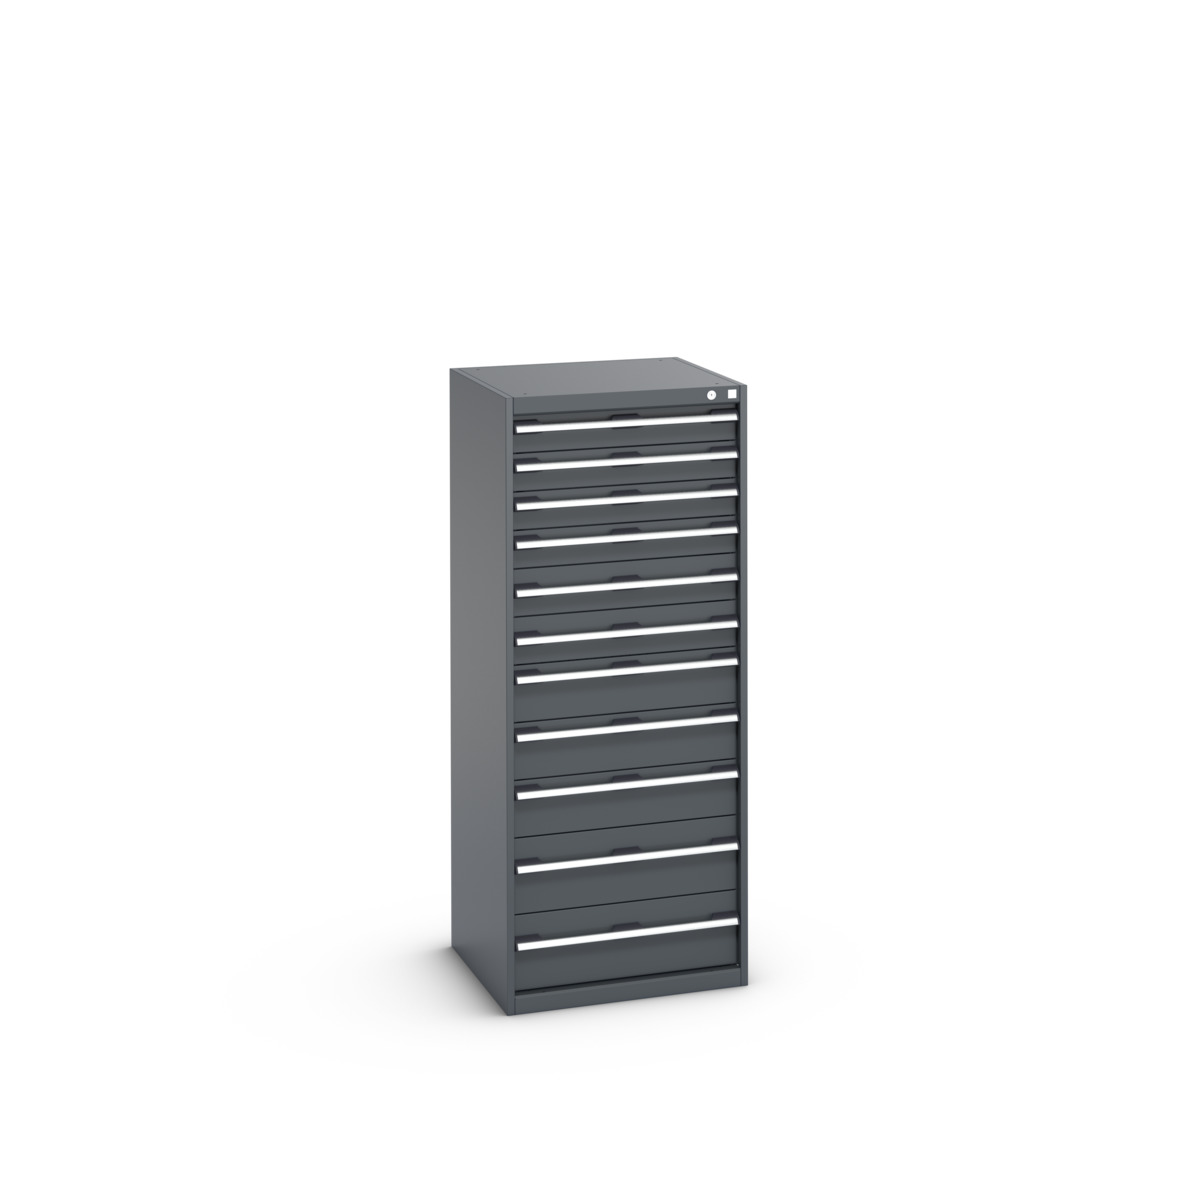 40019156.77V - cubio drawer cabinet